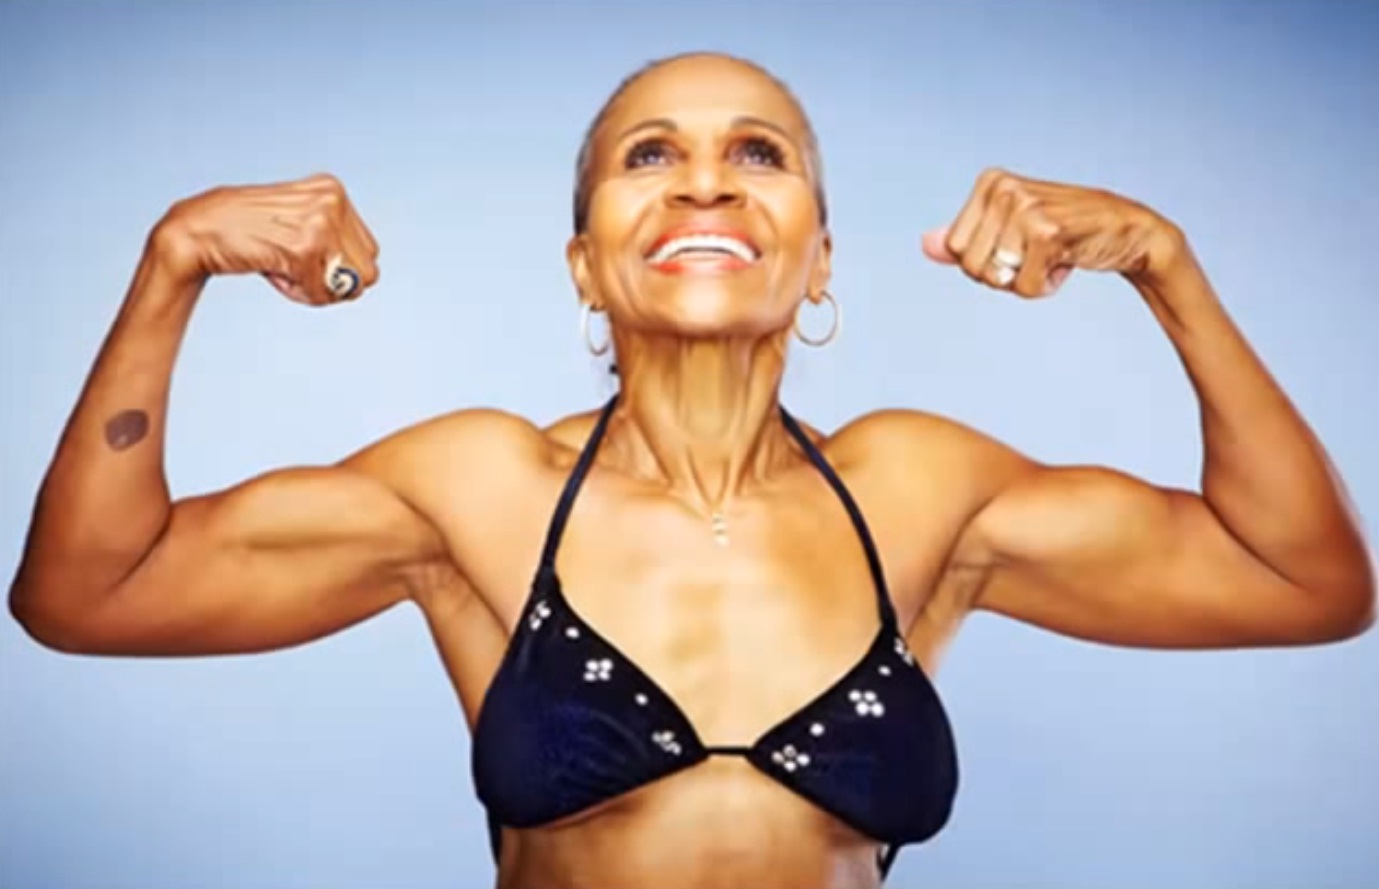 Video: Ernestine Shepherd World's Oldest Female Body Builder Turns 80